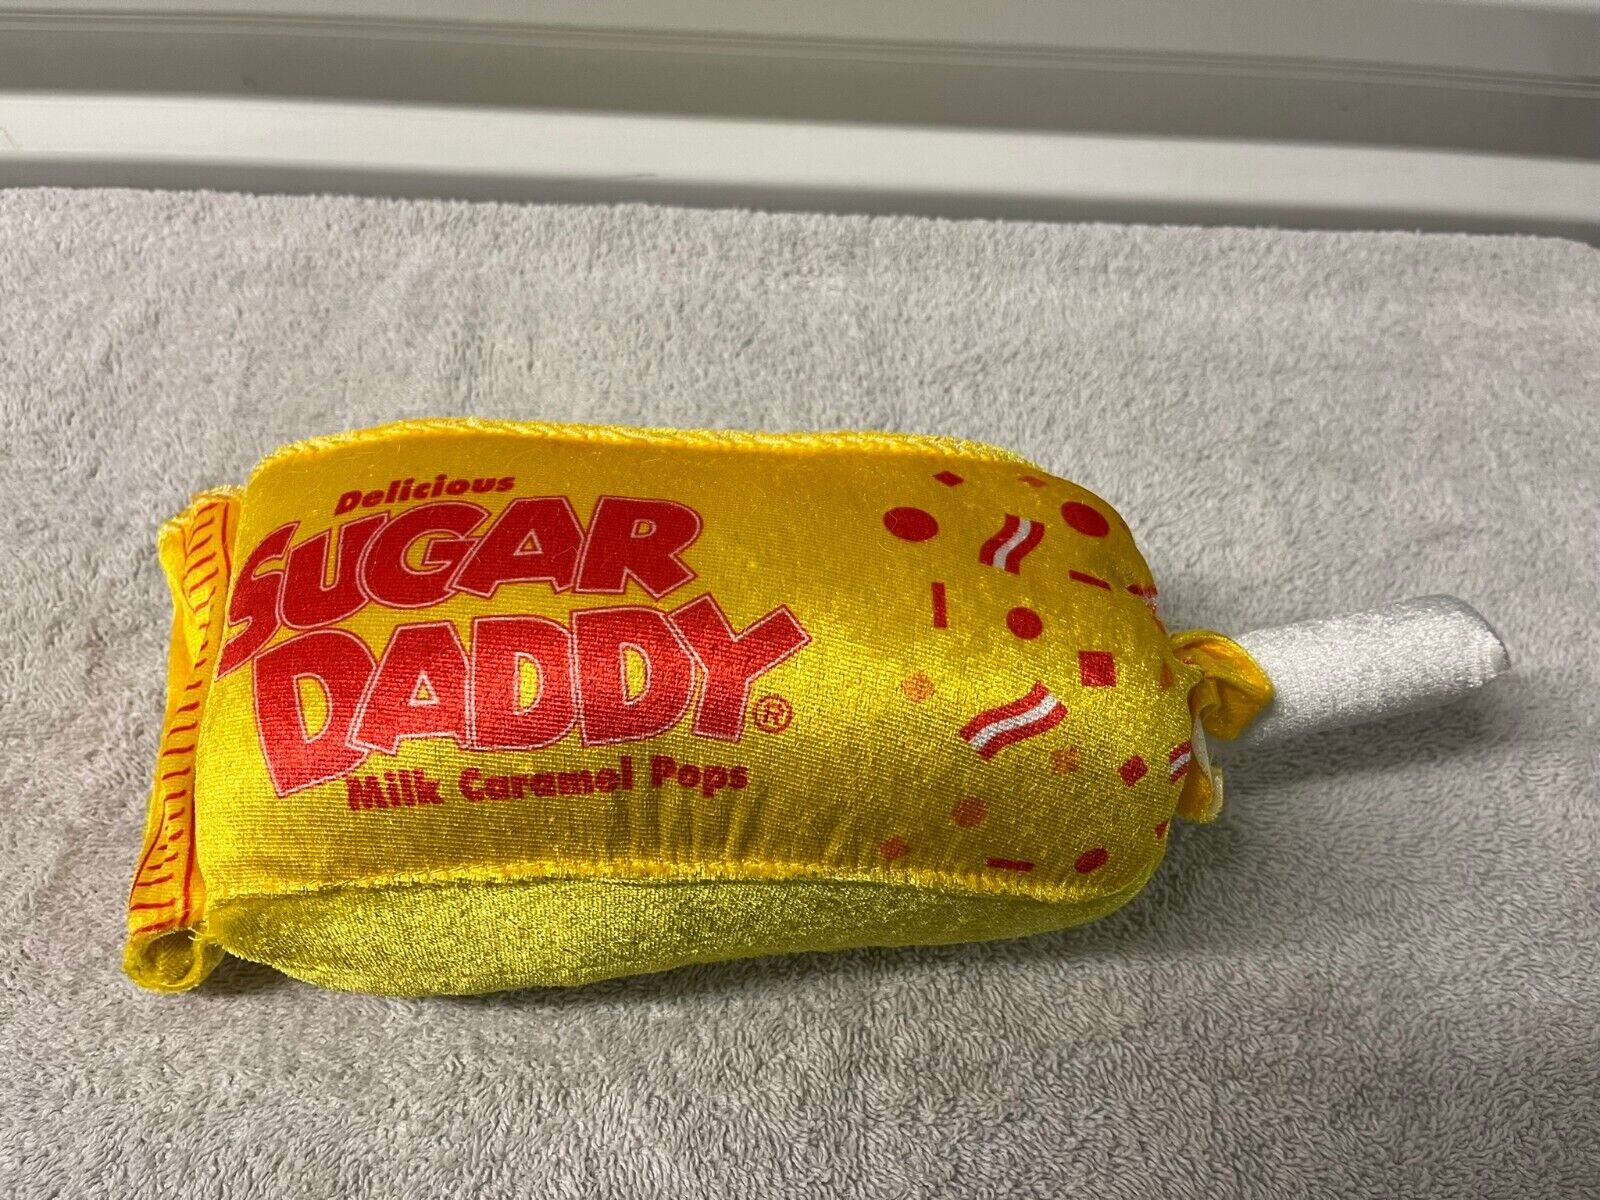 New Sugar Daddy Sweet Plush Stuffed Toy